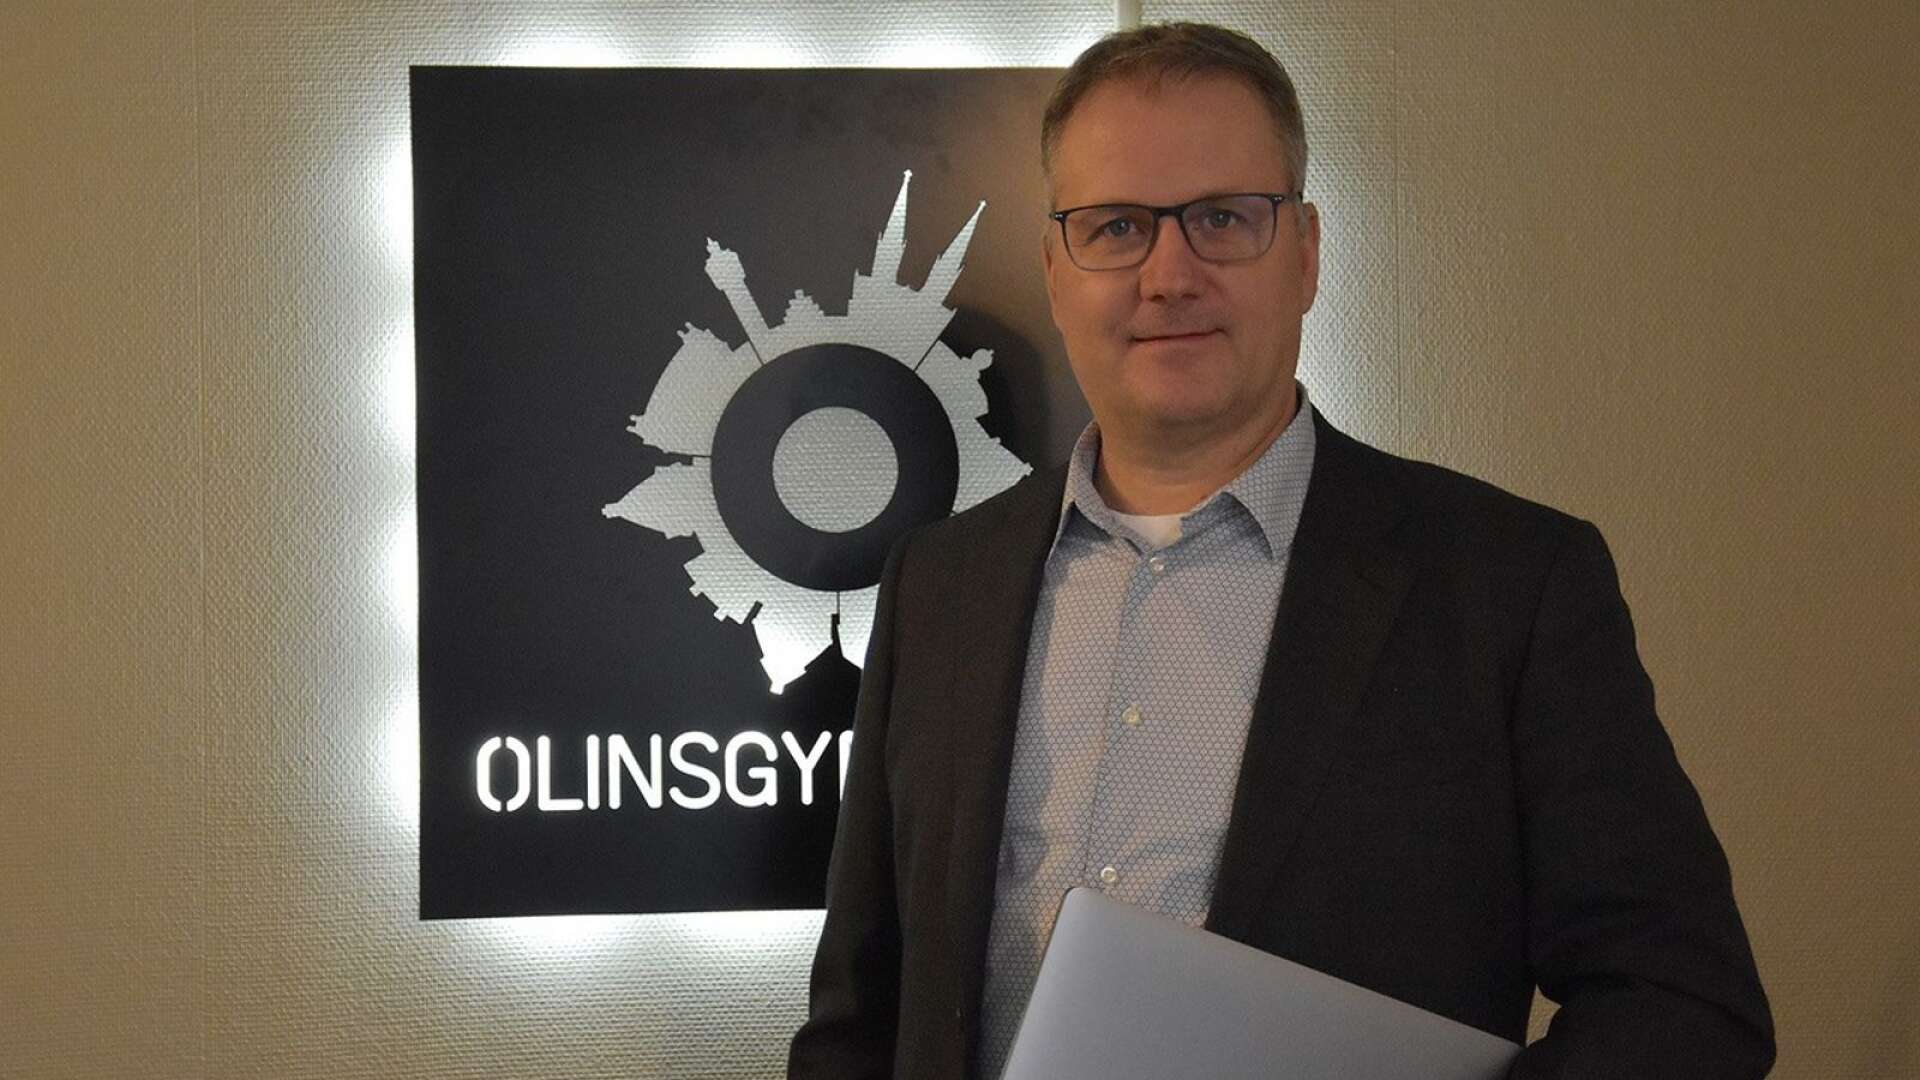 Lidköpings tidigare skolchef Ulf Karlsson blir vd för Olinsgymnasiet i Skara. Samtidigt etablera friskolan en ny skolenhet i Falköping, och tar med det ännu ett steg i sin expansion.